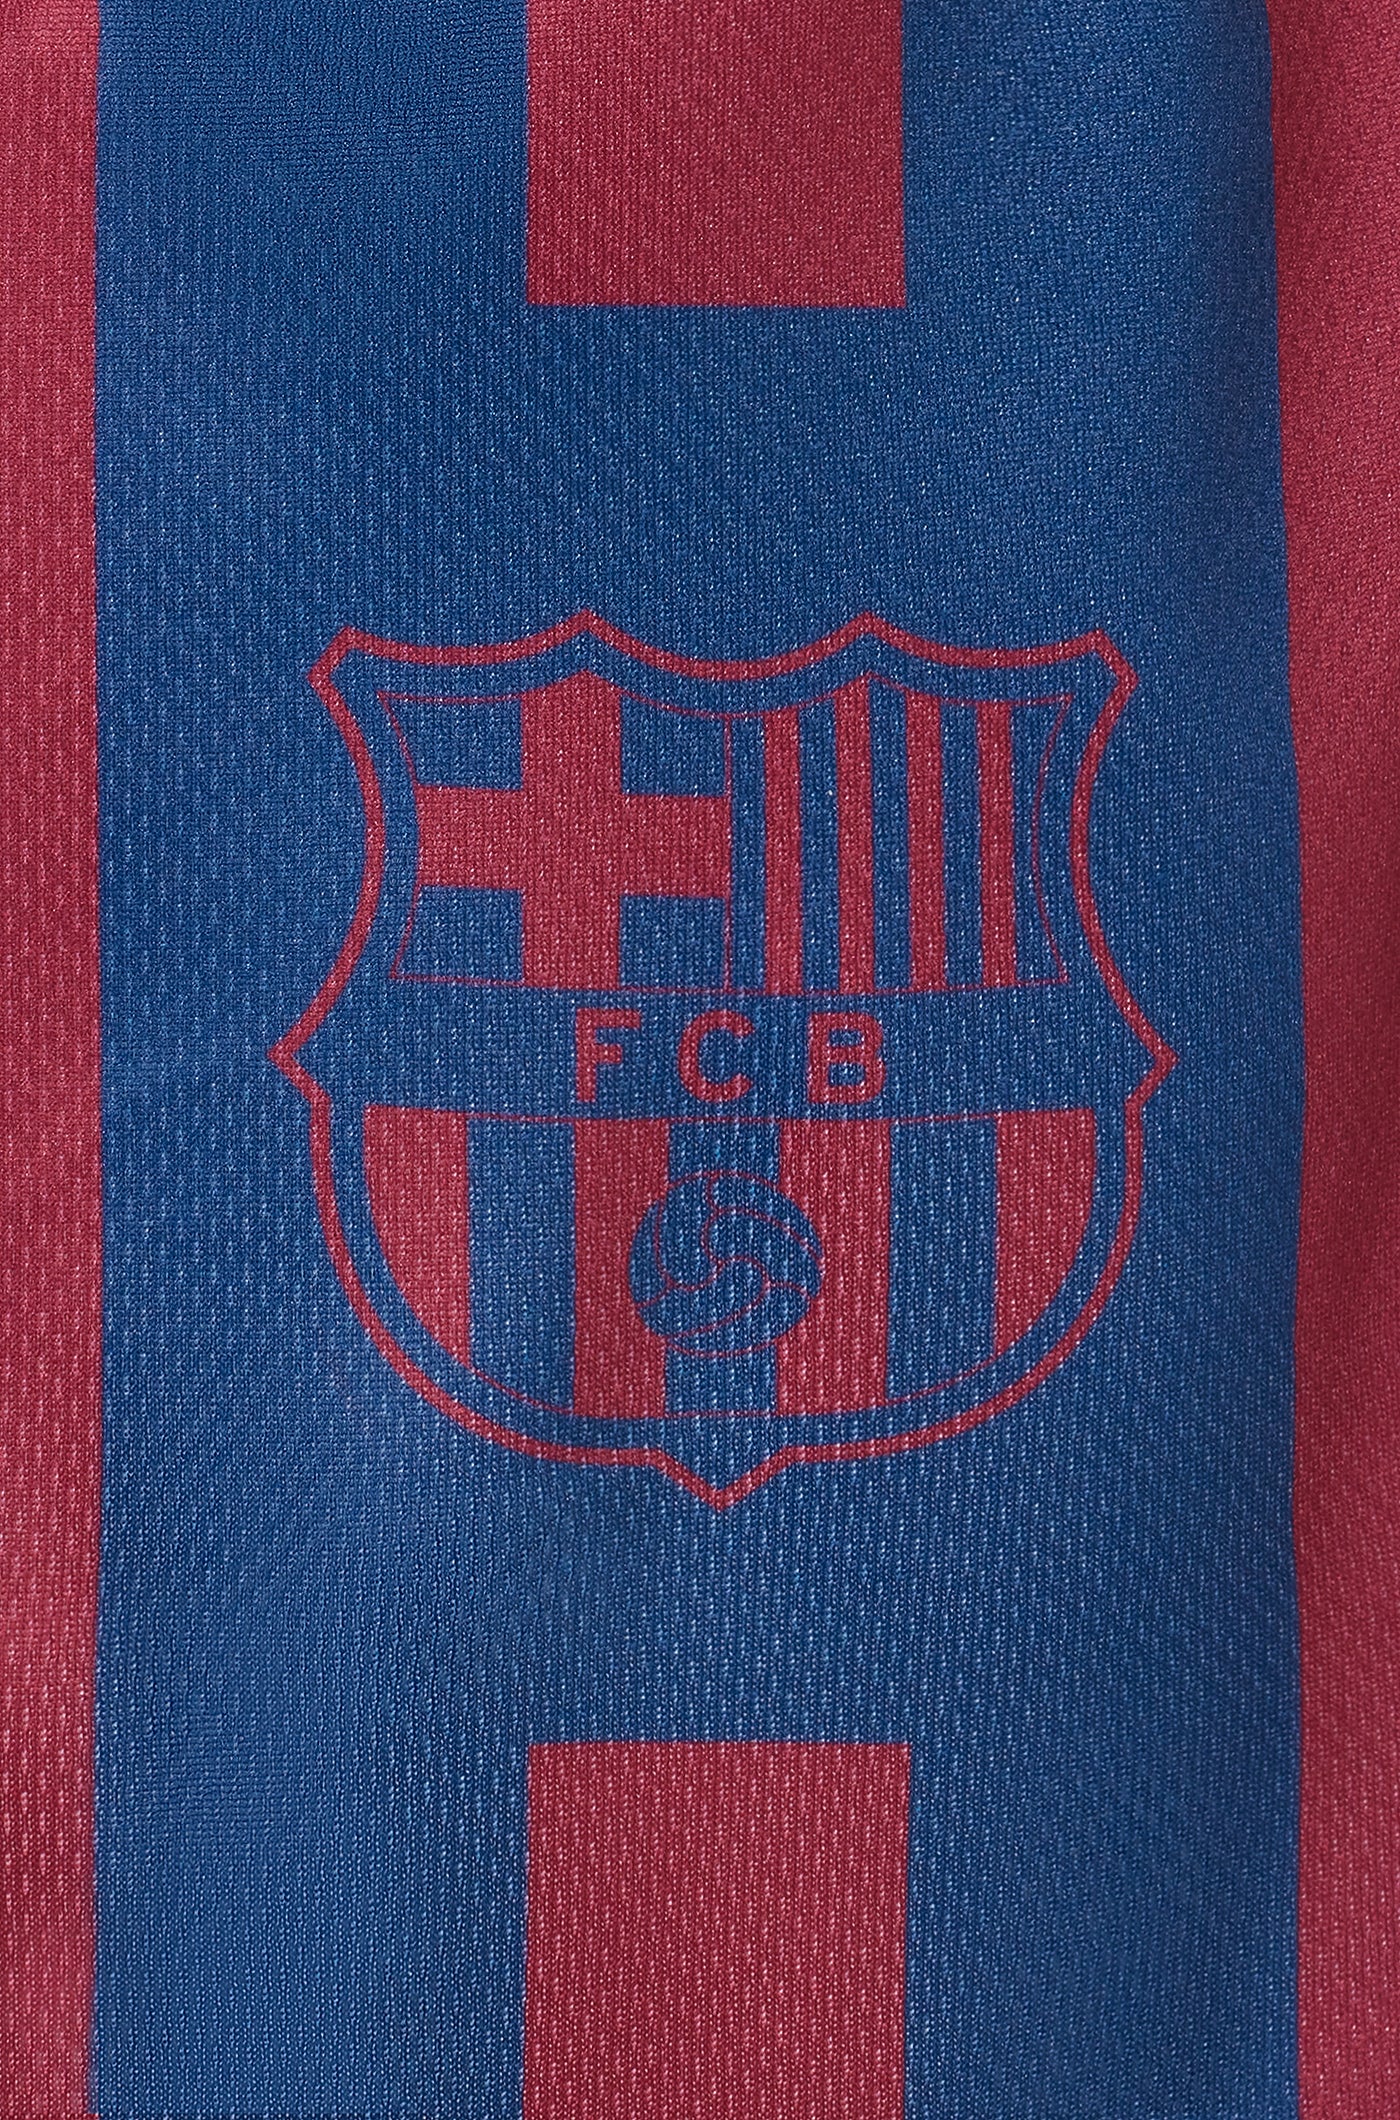 T-shirt pour chien du FC Barcelone